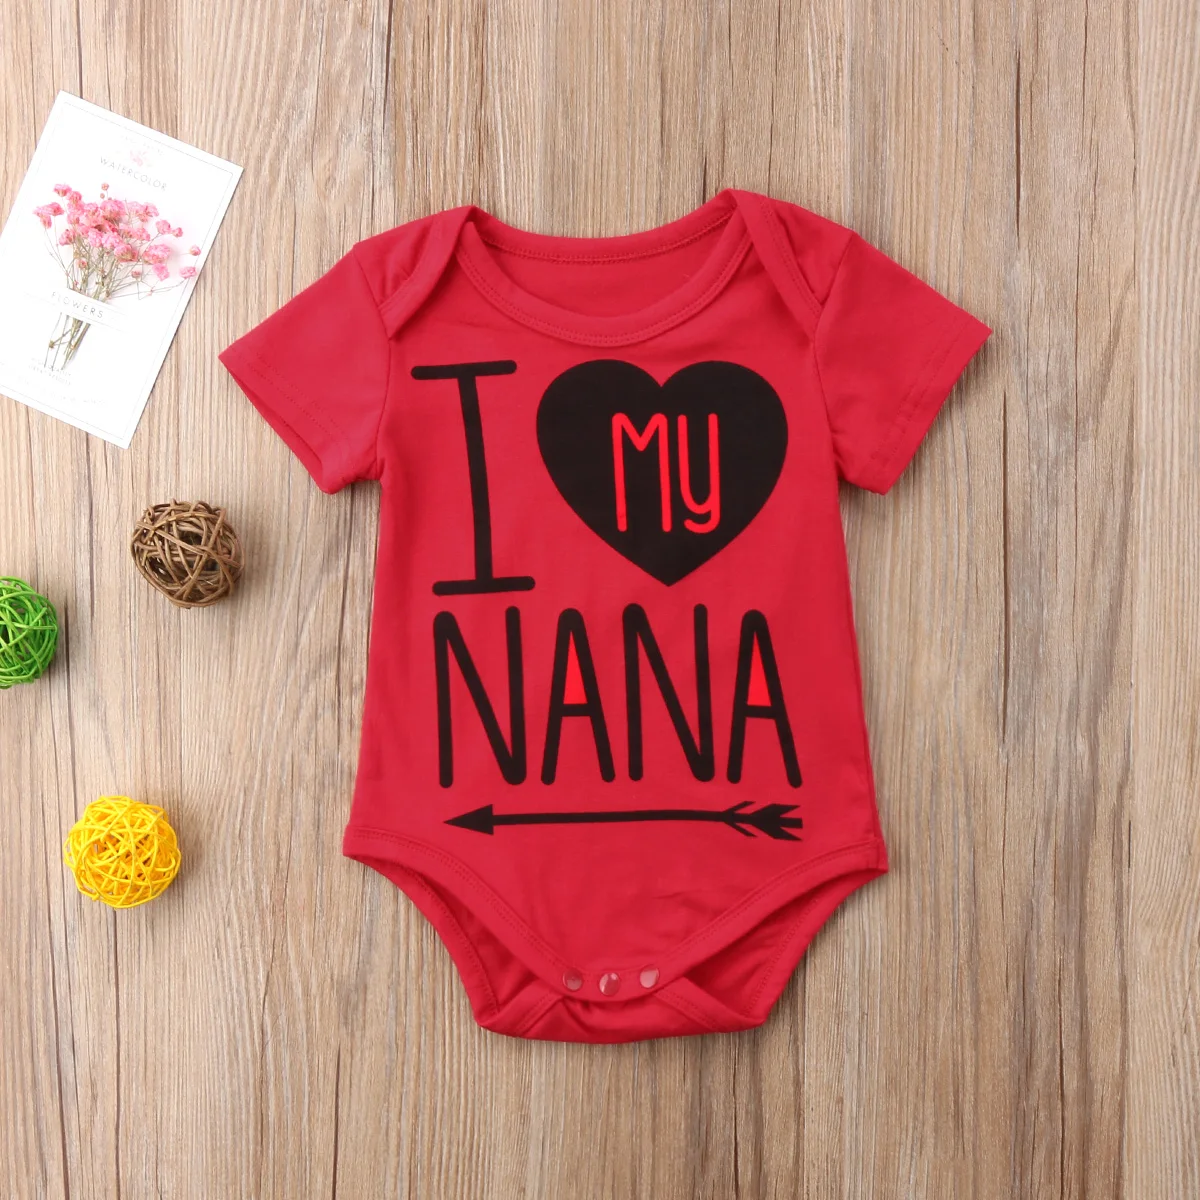 Хлопковые боди с короткими рукавами и надписью «NANA» для новорожденных мальчиков и девочек, летняя одежда для маленьких девочек и мальчиков, комбинезон - Цвет: Красный